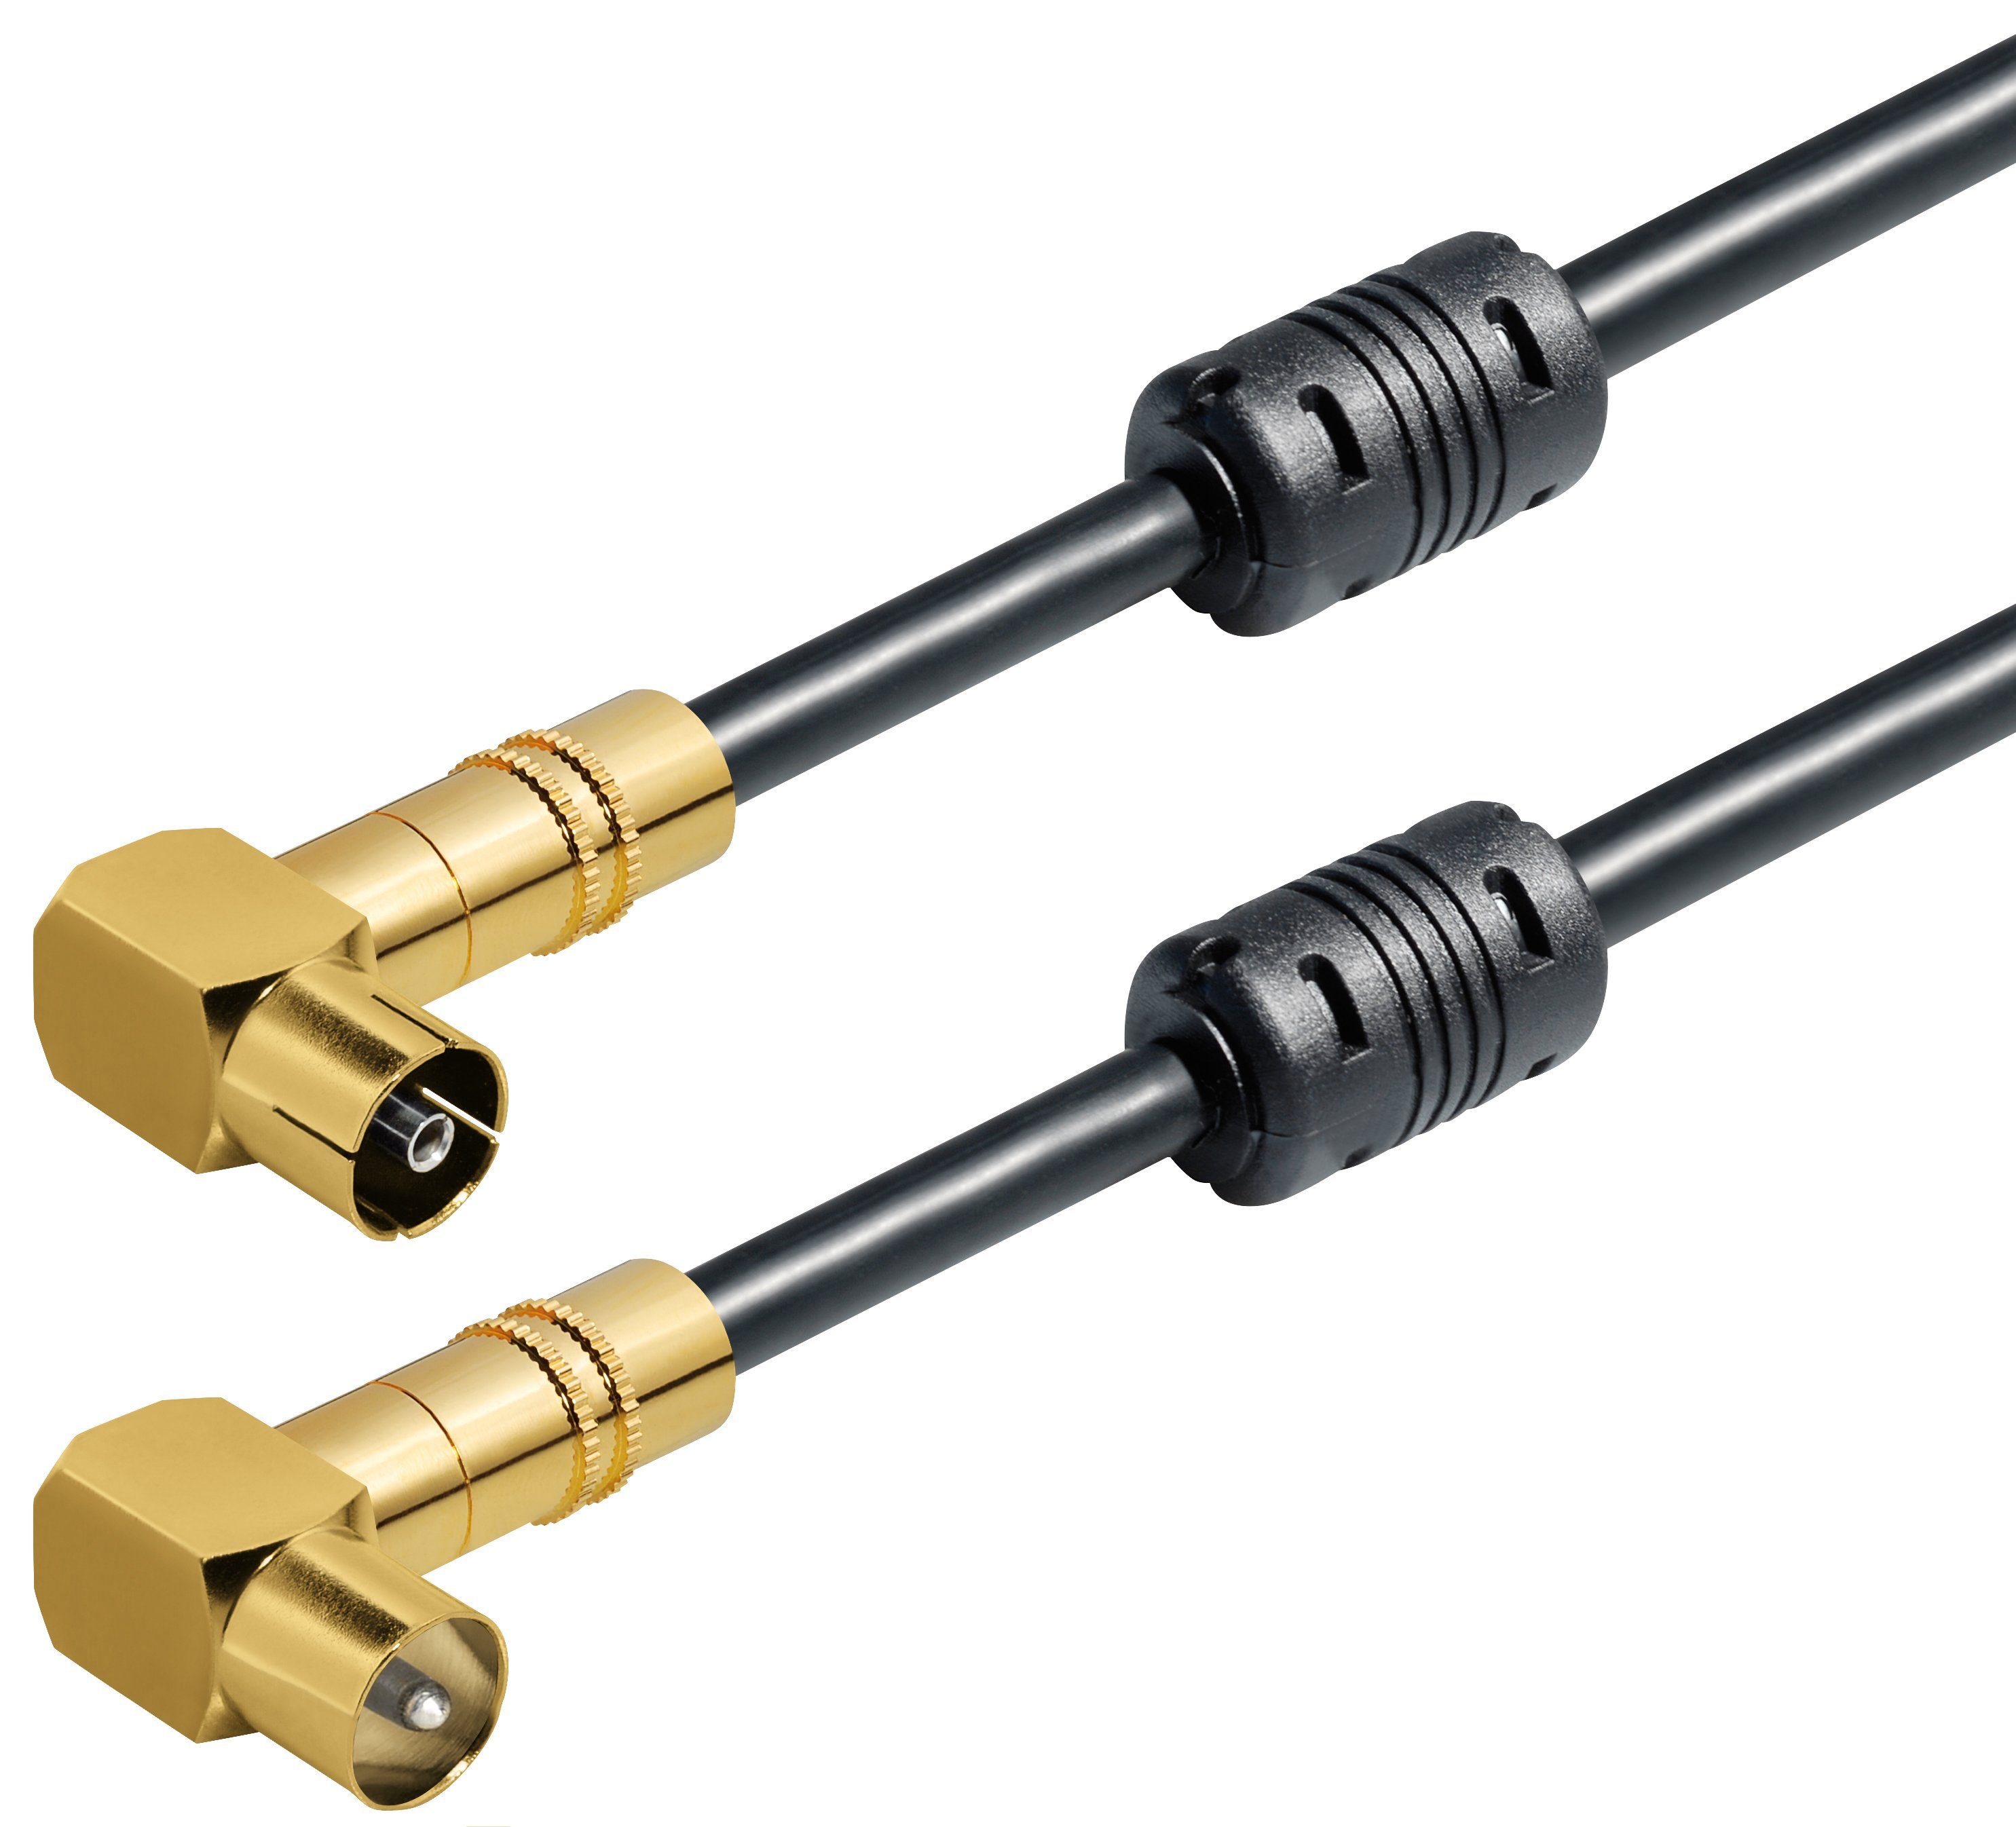 Maxtrack TV-Kabel, IEC Stecker, (250 cm), High-End Antennen-Kabel, 5-fach geschirmt, 135 dB, Class A+